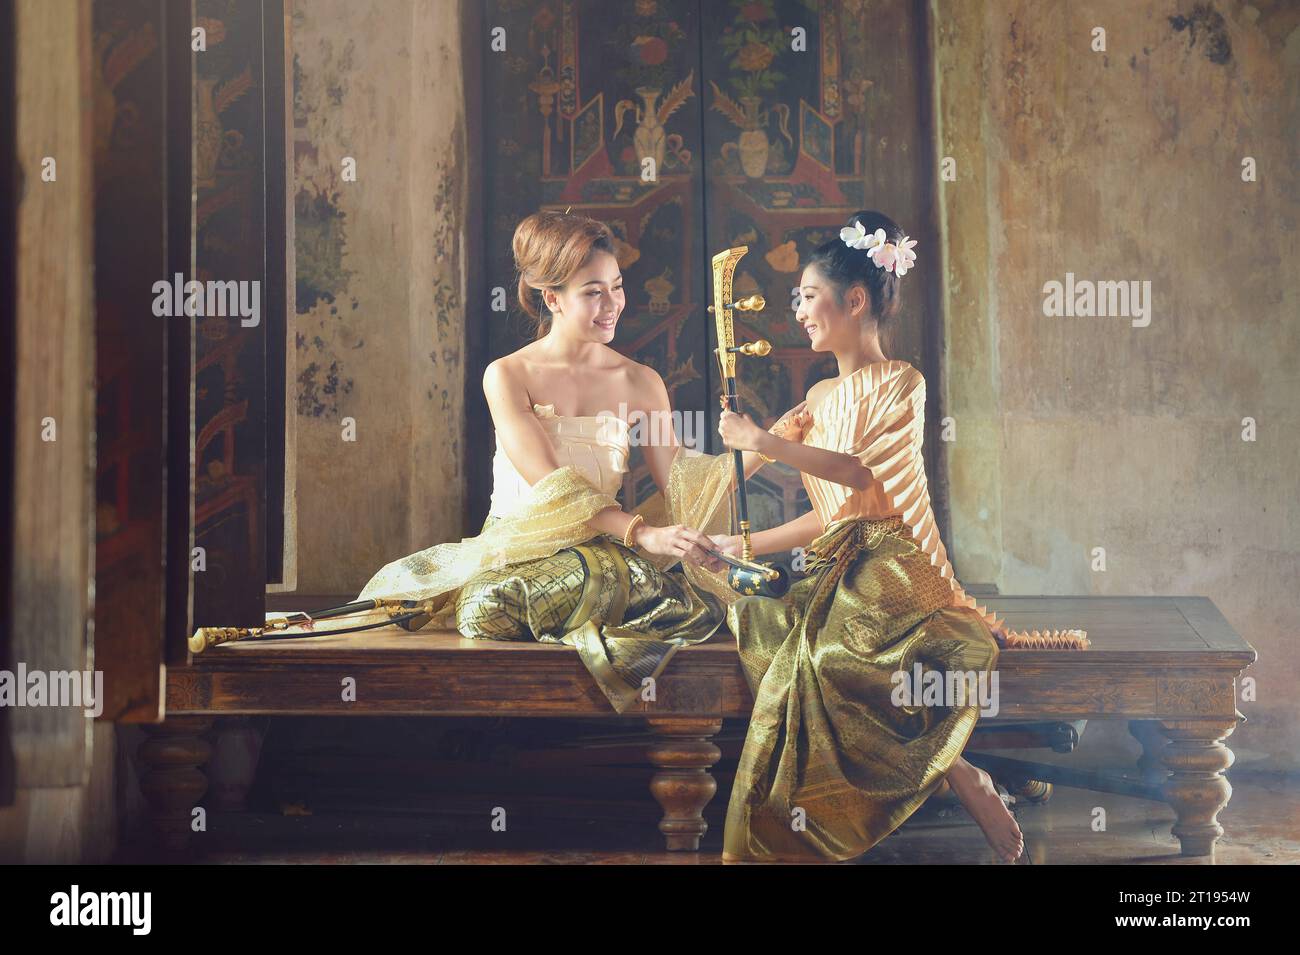 Deux femmes asiatiques en vêtements traditionnels thaïlandais avec un instrument à cordes Saw Duang thaïlandais, Thaïlande Banque D'Images